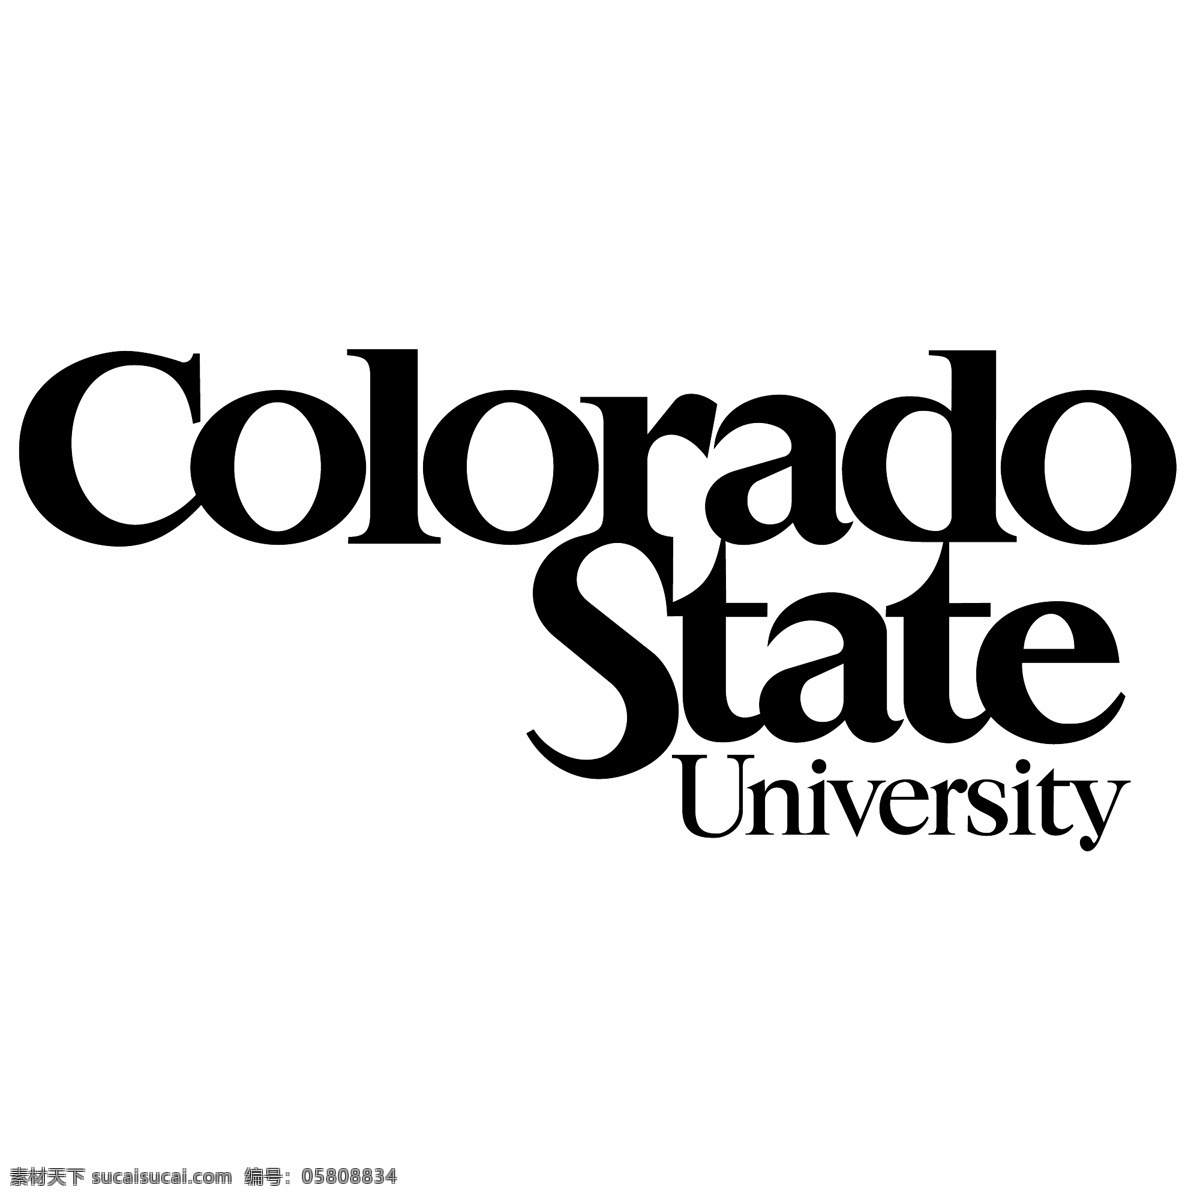 科罗拉多 州立 大学 标识 公司 免费 品牌 品牌标识 商标 矢量标志下载 免费矢量标识 矢量 psd源文件 logo设计